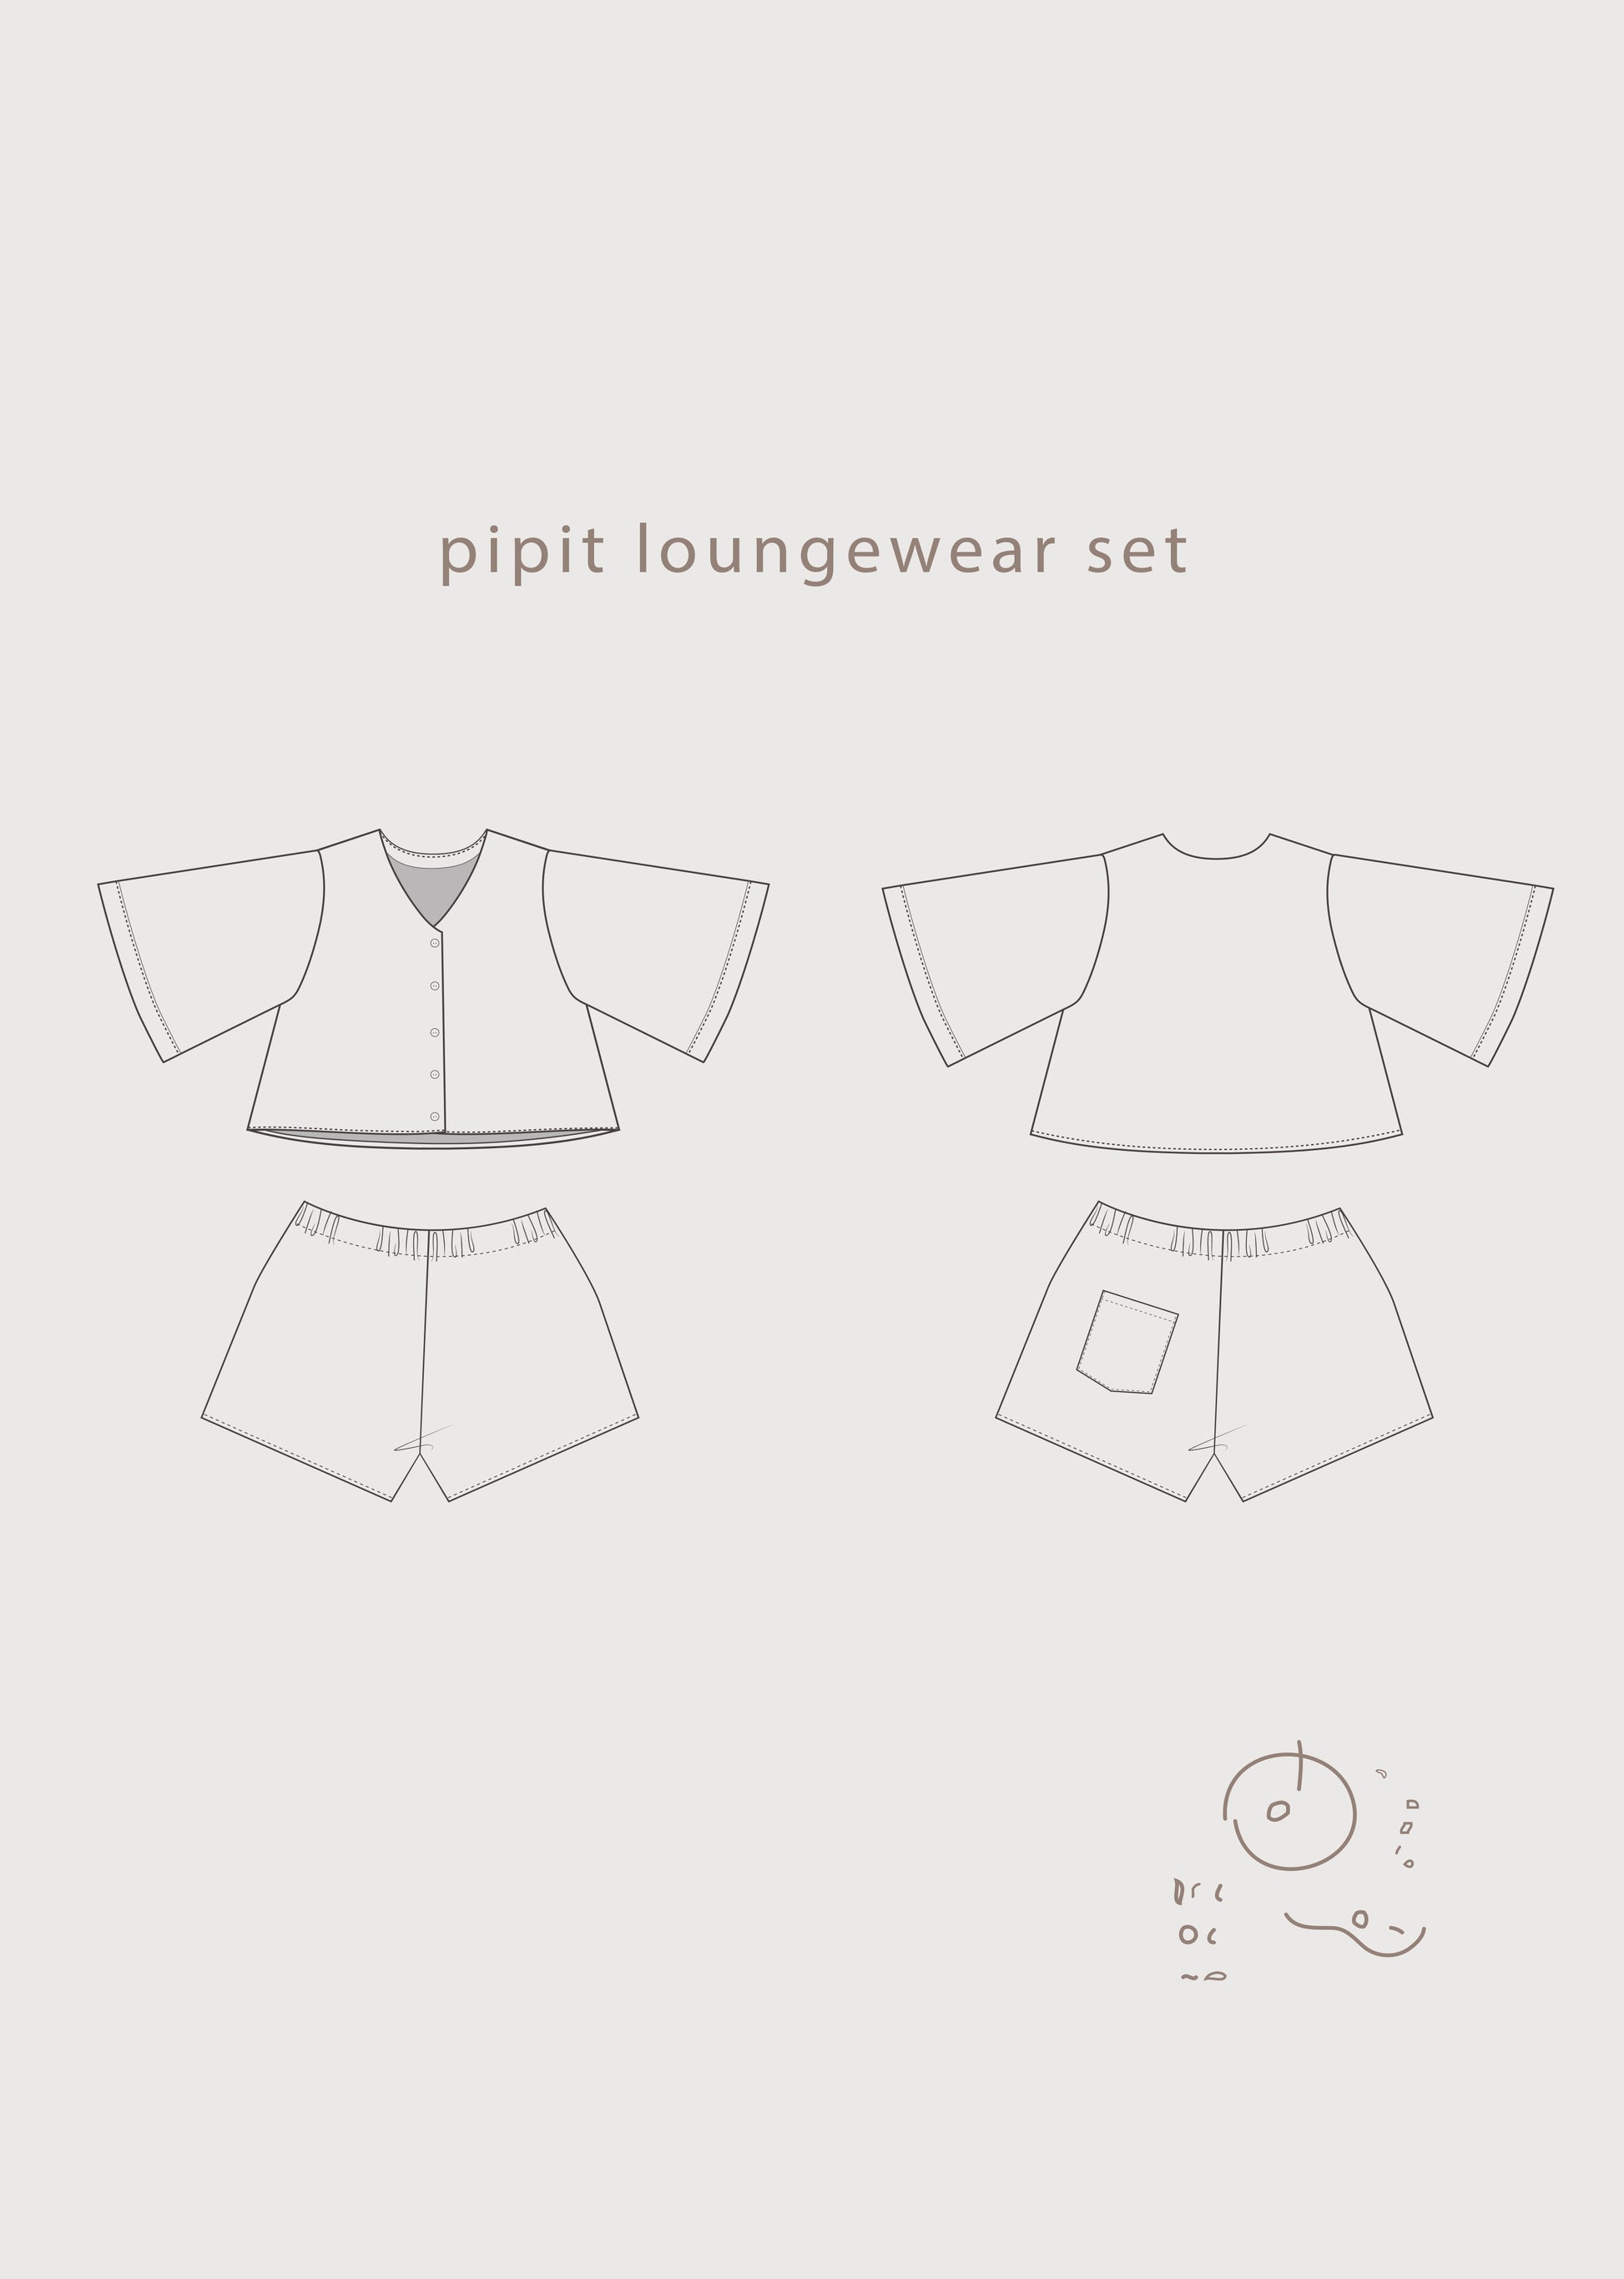 Pipit Loungewear Set DIGITAL Pattern – Common Stitch.